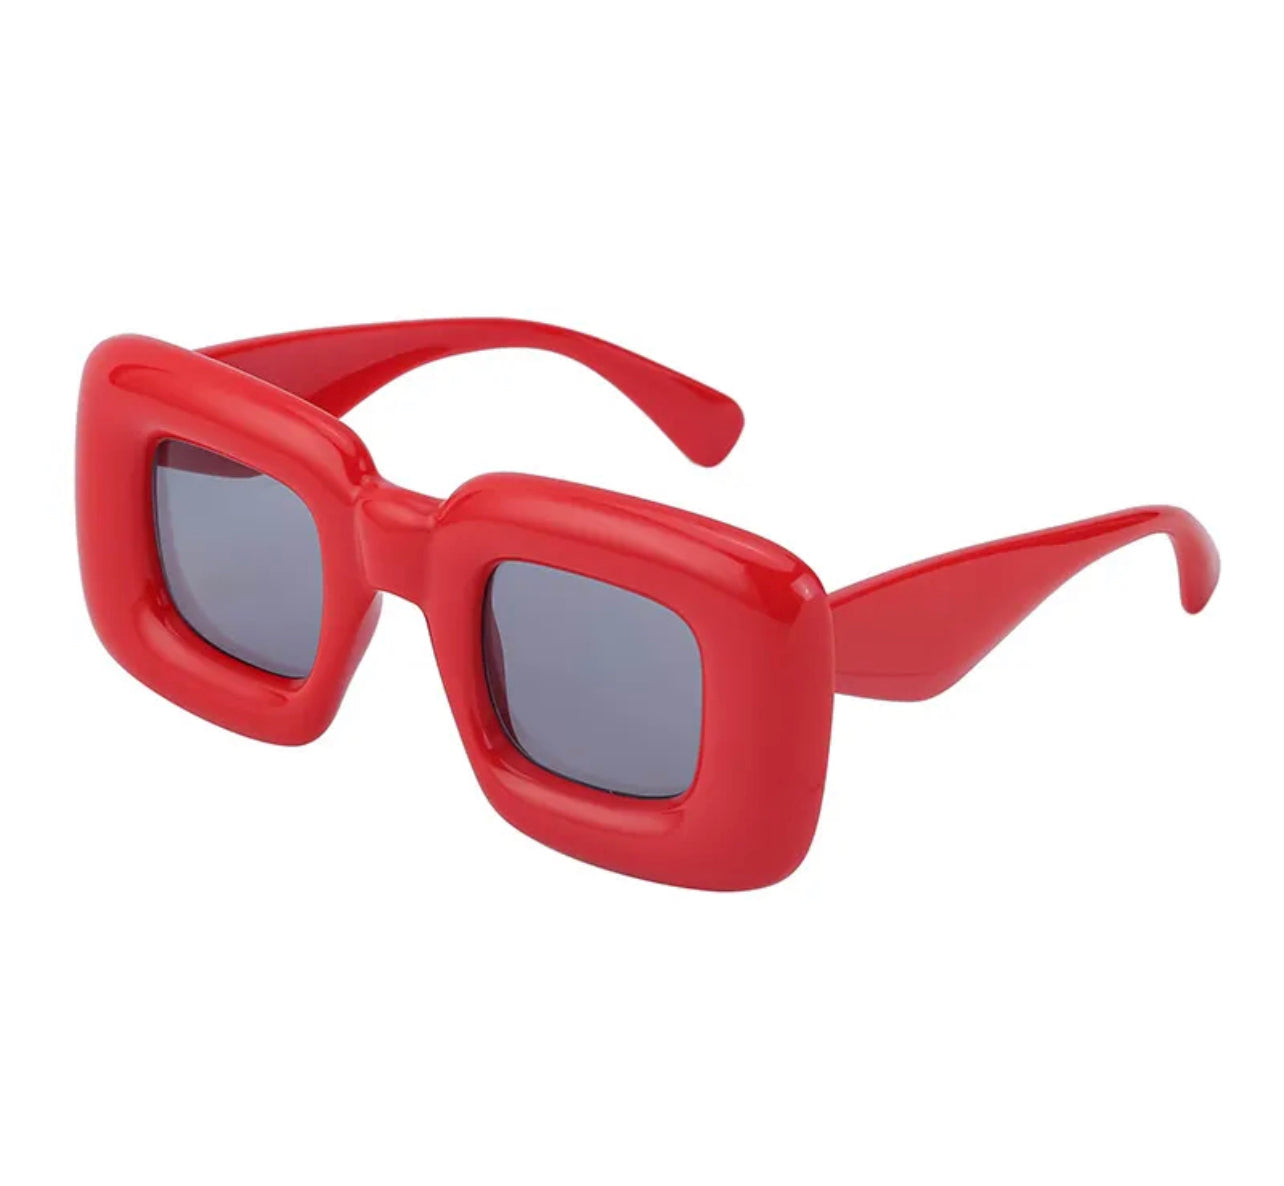 New Girl Retro Square Sunglasses